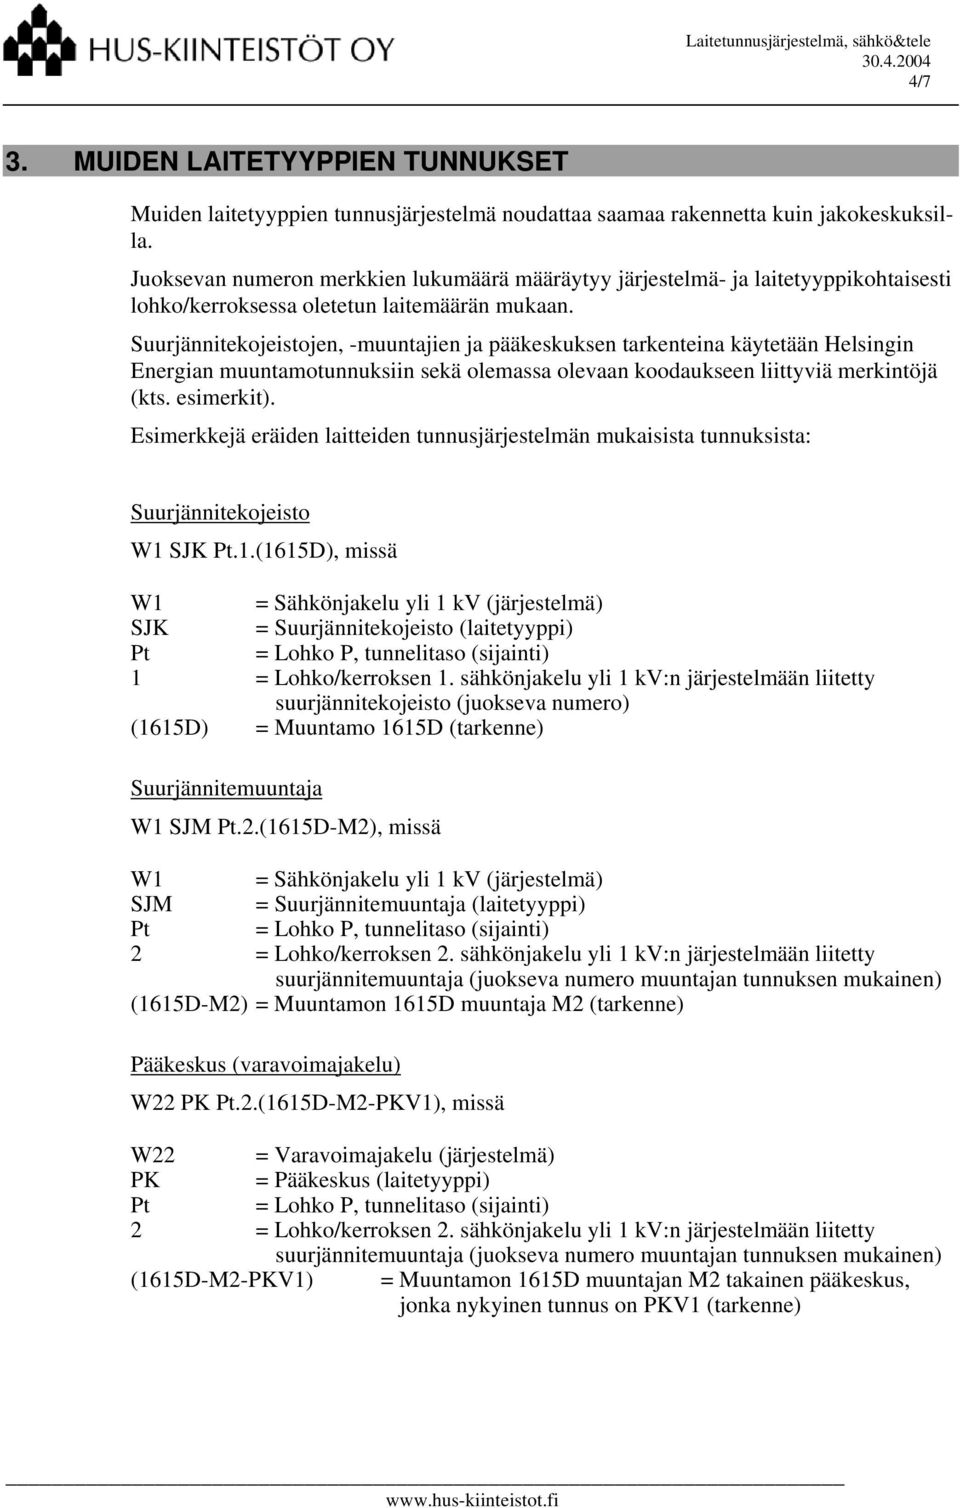 Suurjännitekojeistojen, -muuntajien ja pääkeskuksen tarkenteina käytetään Helsingin Energian muuntamotunnuksiin sekä olemassa olevaan koodaukseen liittyviä merkintöjä (kts. esimerkit).